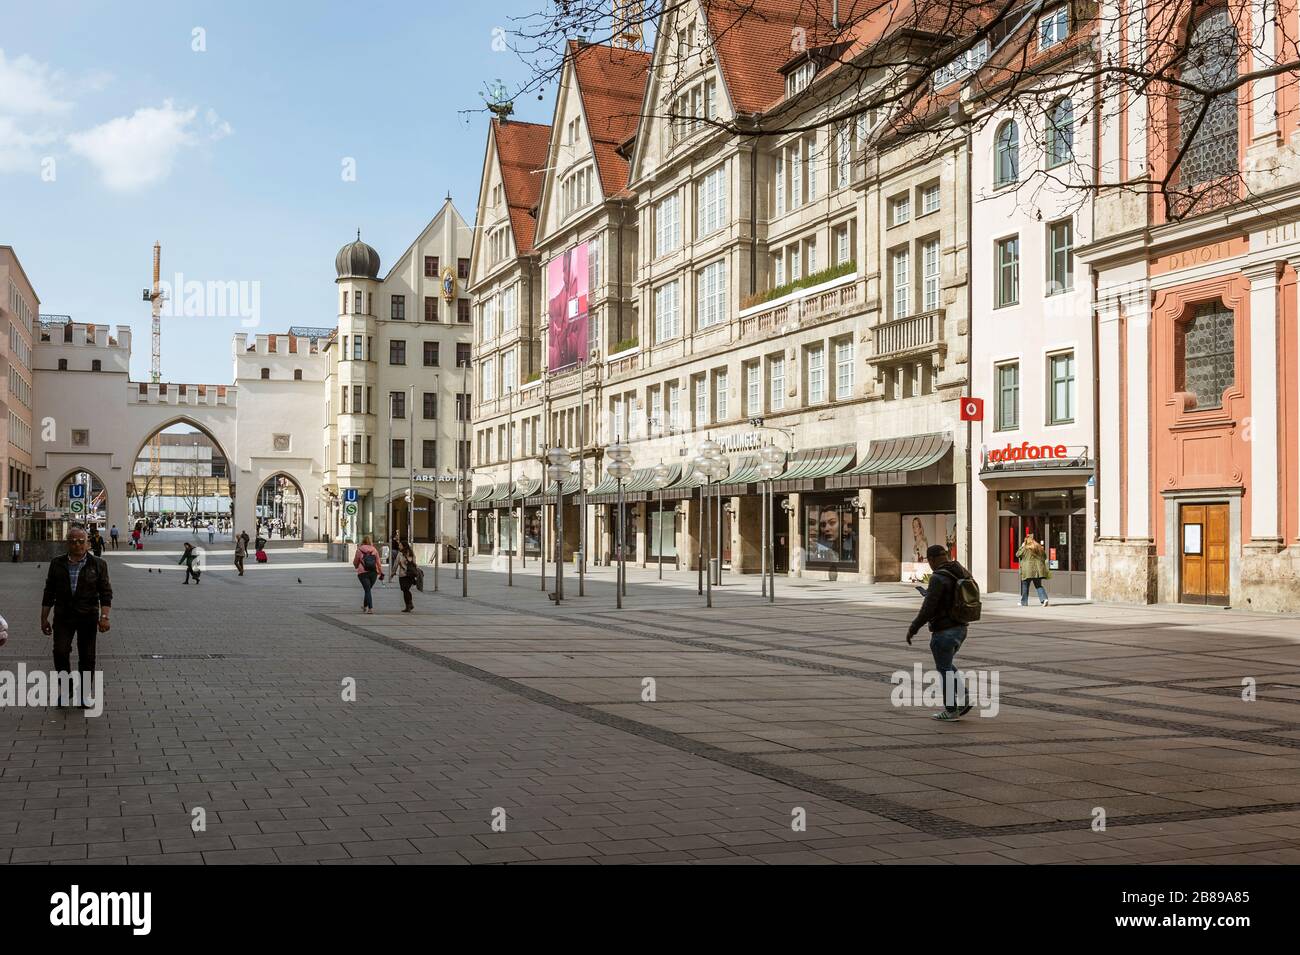 Baviera-Mucnich-Germania, 20. März 2020: Poche persone camminano al Karlsplatz Stachus di Monaco, che è di solito affollata ma rimane vuota a causa di Th Foto Stock